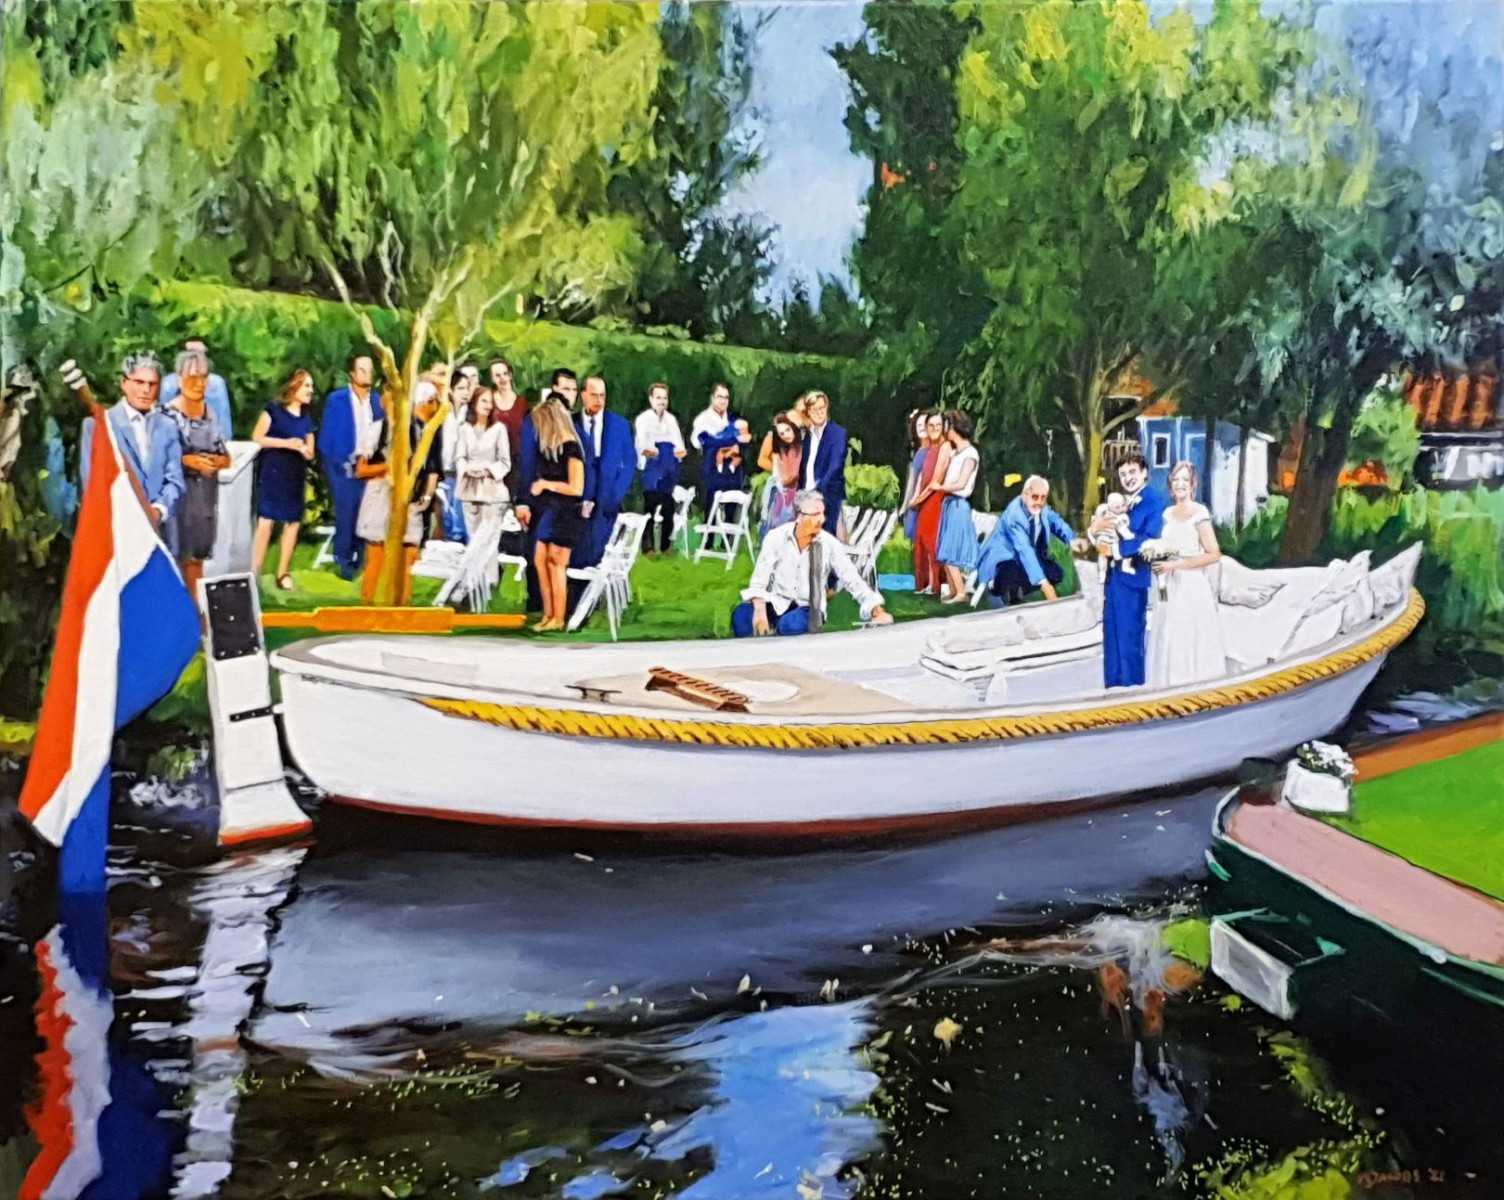 Rob Jacobs schildert doek van 80x100cm tijdens het familiefeest in Oude Ade, Zuid-Holland.